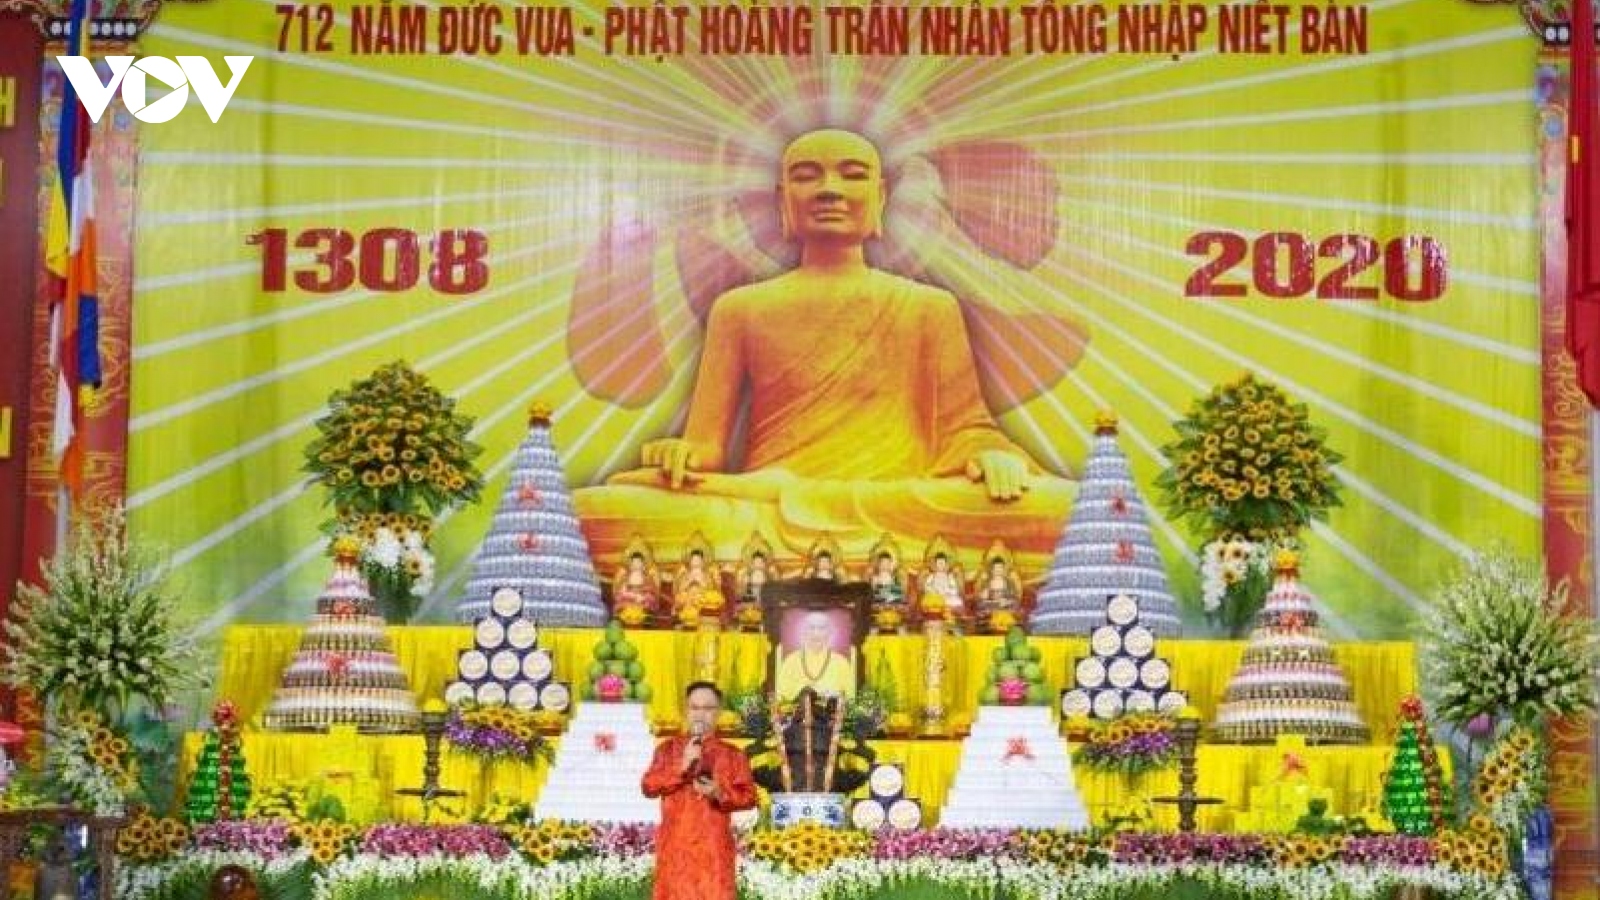 Đại lễ tưởng niệm 712 năm Đức Vua Phật hoàng Trần Nhân Tông nhập niết bàn